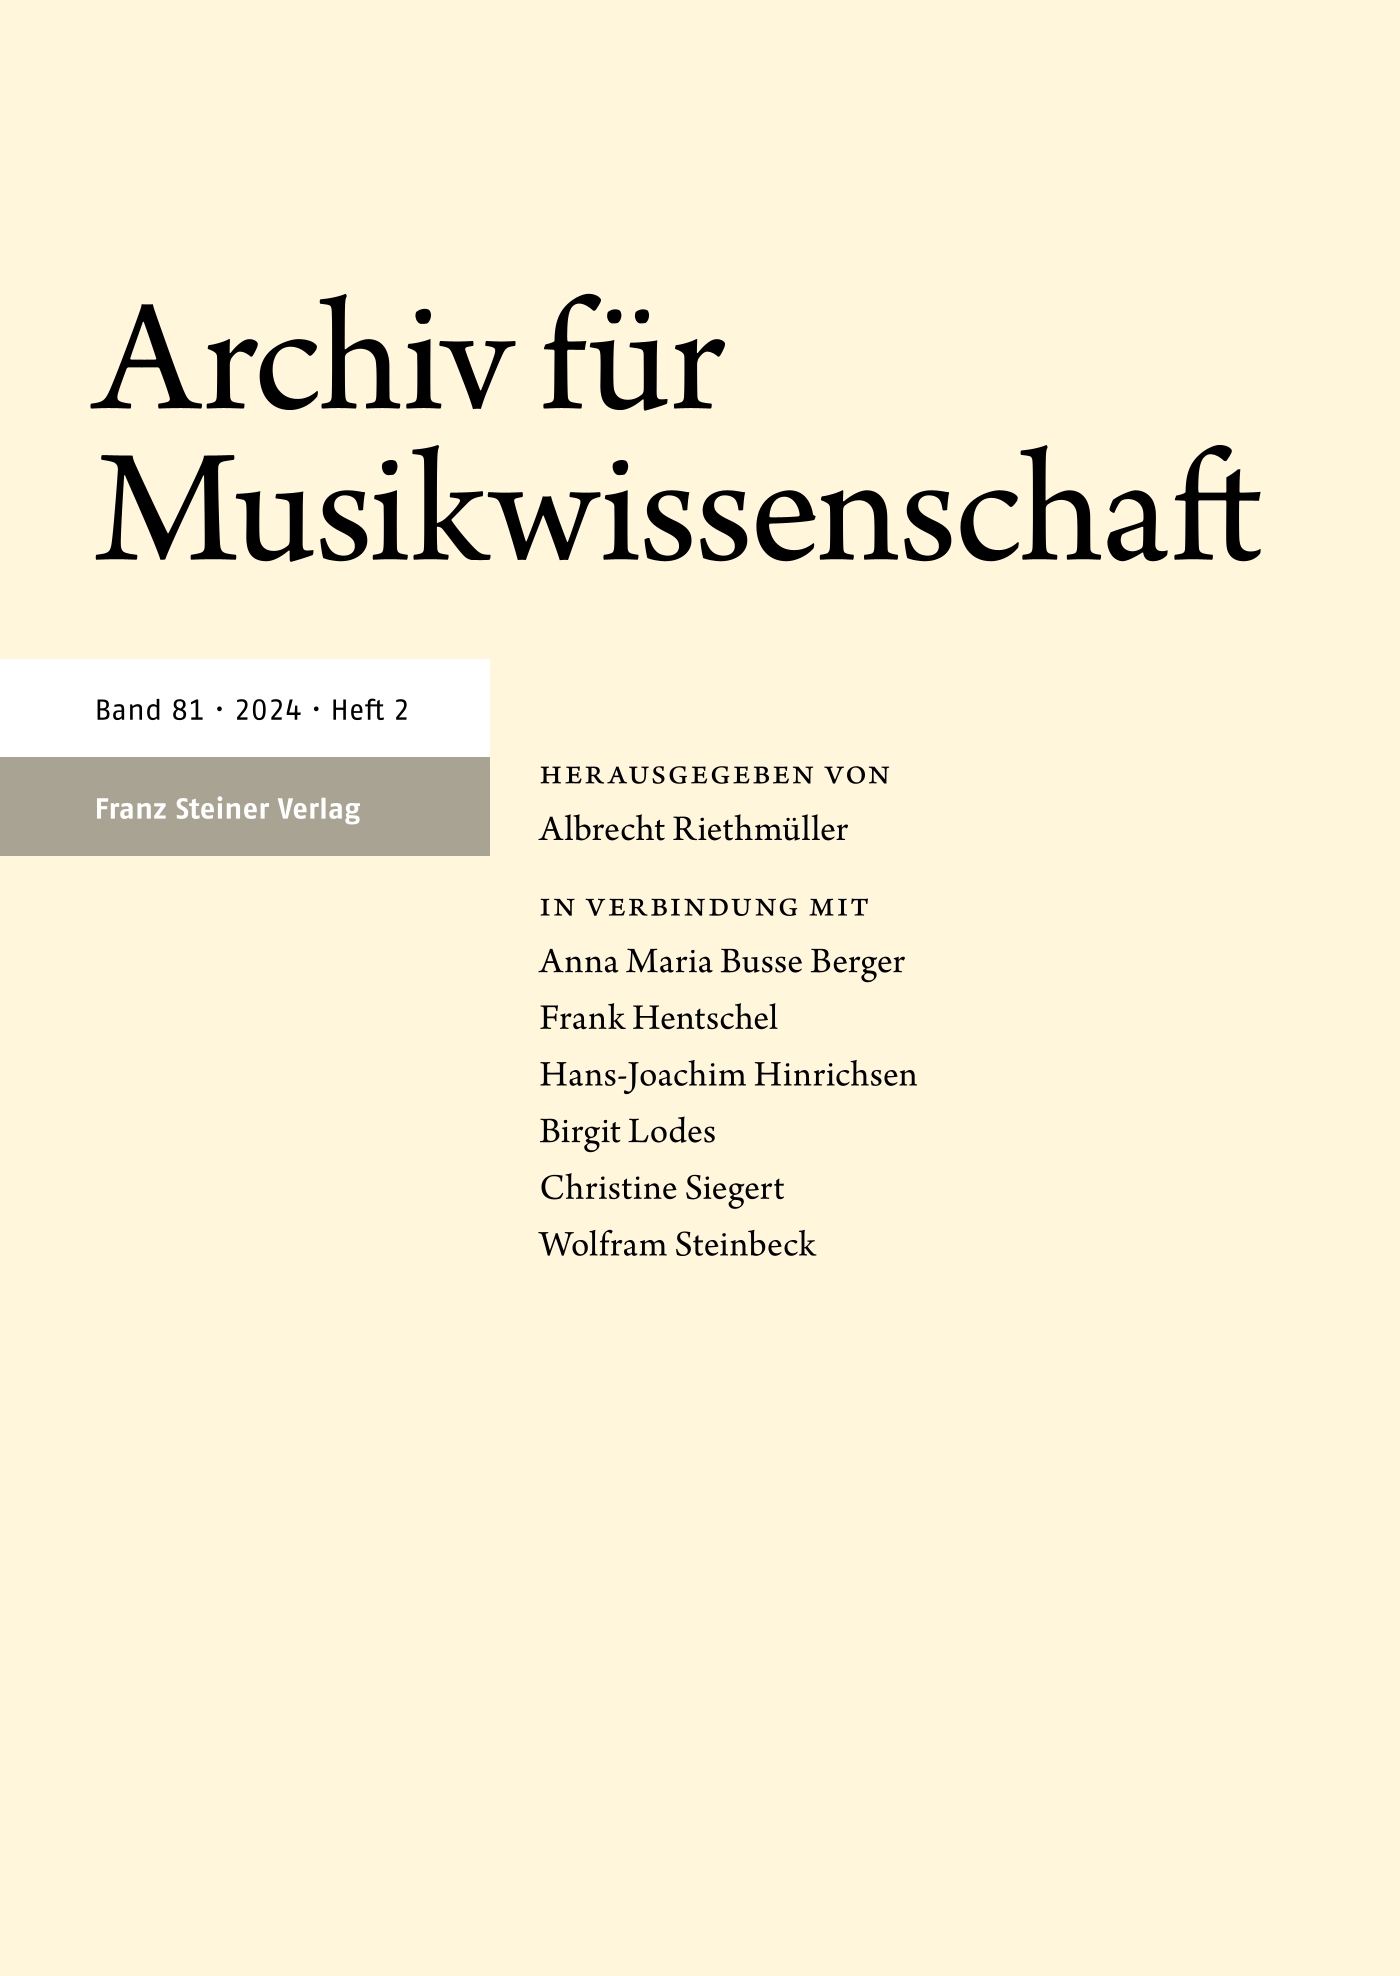 Archiv für Musikwissenschaft - print + online